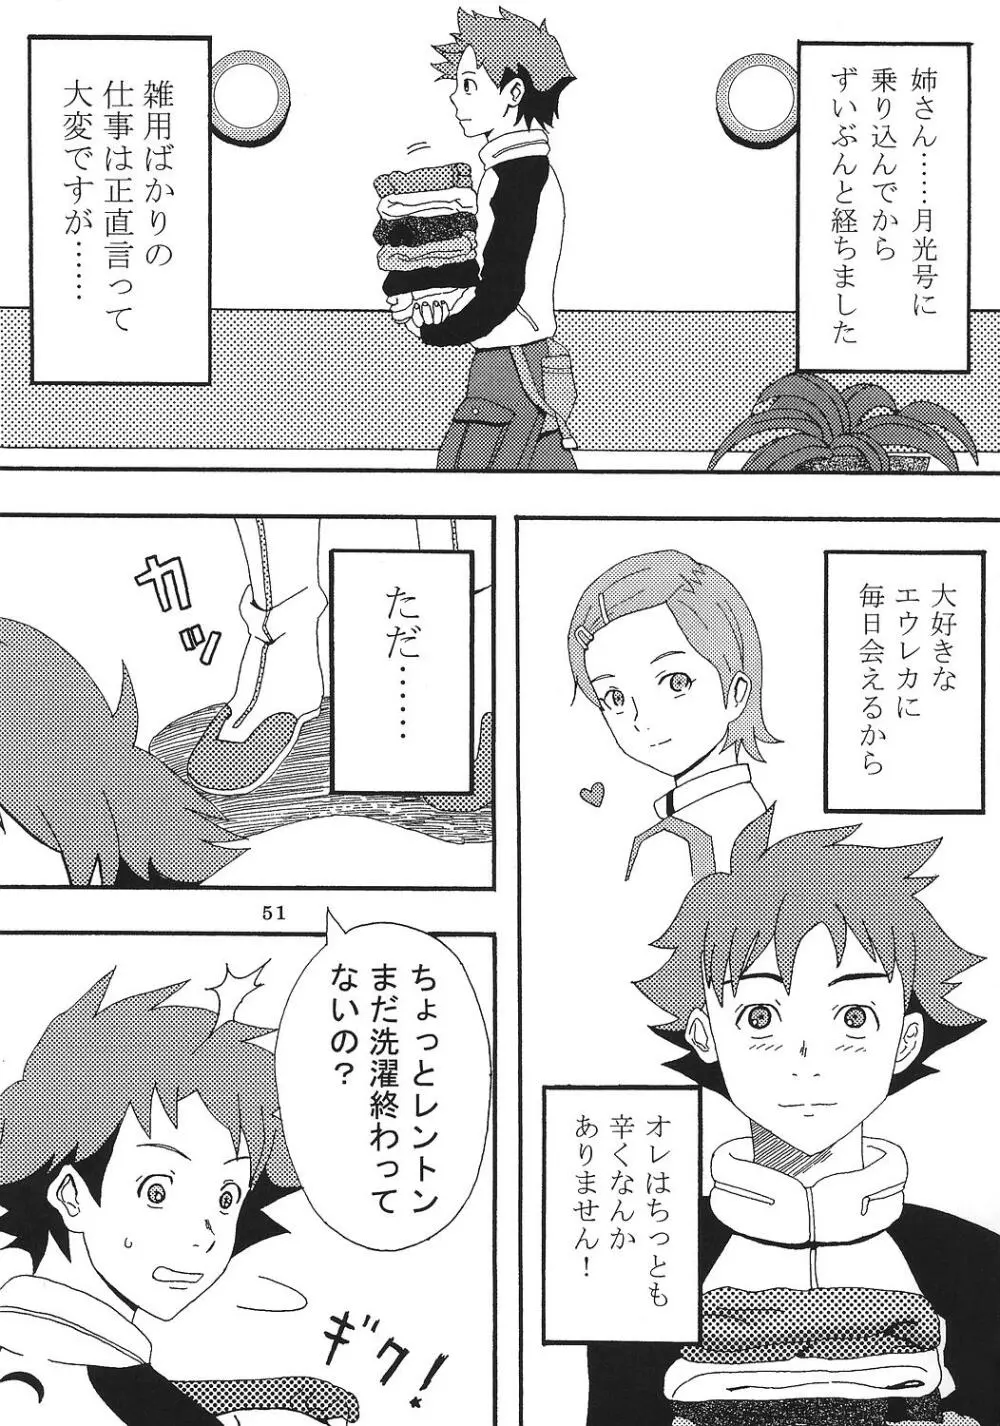 裏 ray-out vol.2 - page52